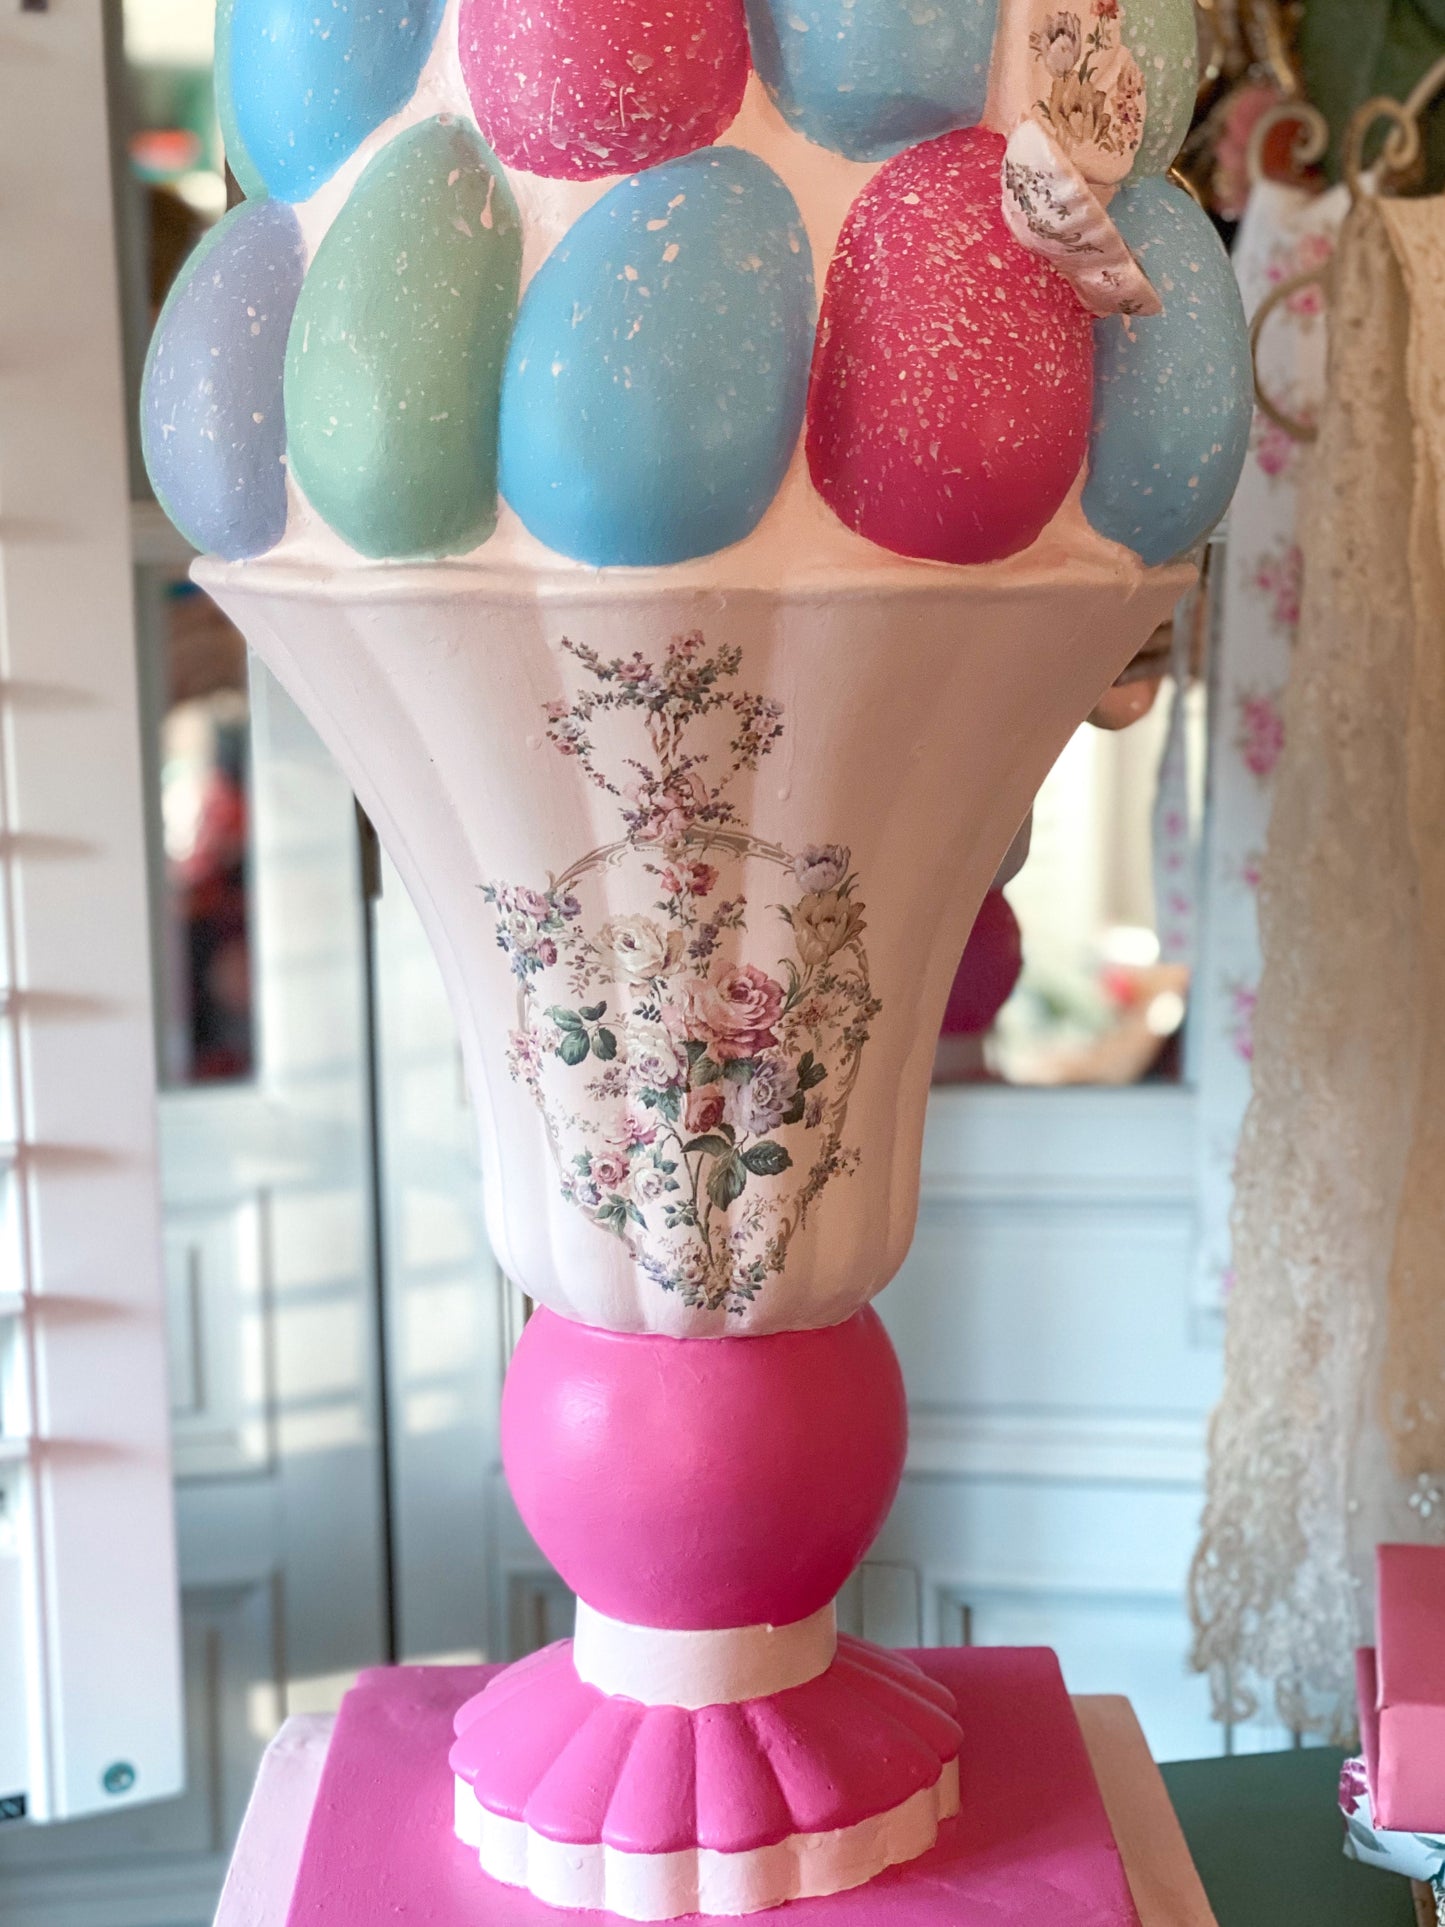 Árbol de huevos grande pintado a mano a medida en urna